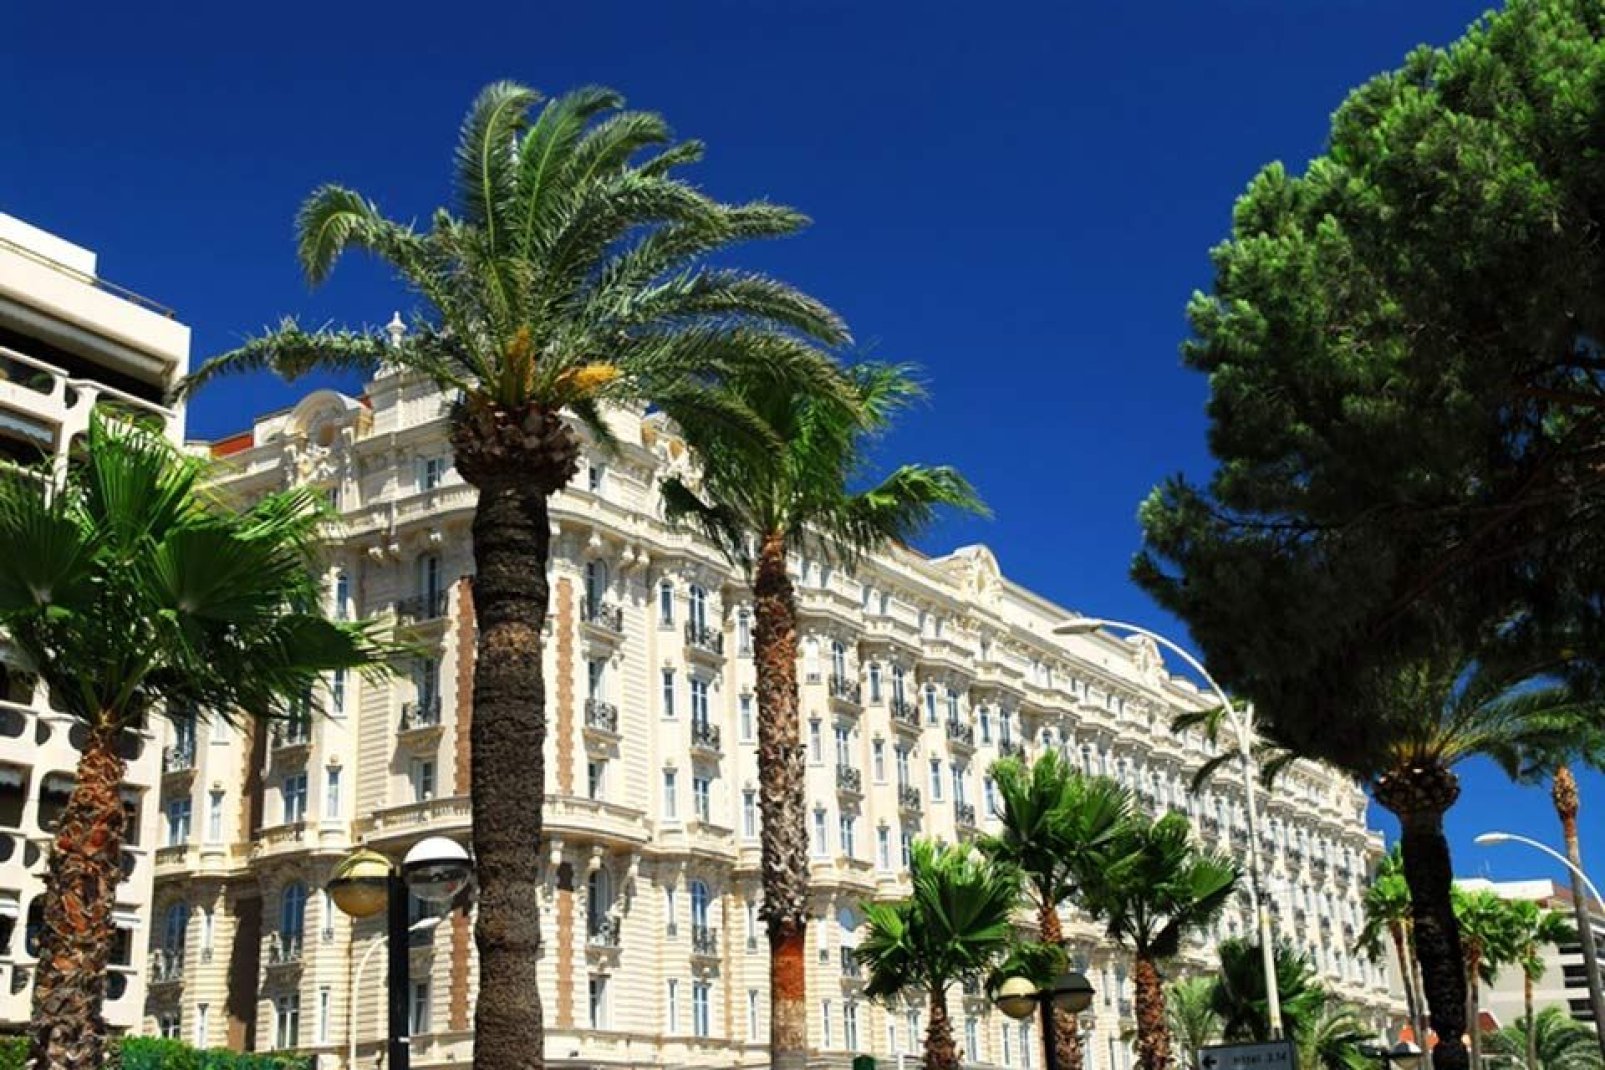 Die Flaniermeile Boulevard de la Croisette ist zugleich einer der elegantesten Orte der Stadt. Luxushotels wie das Majestic oder das Carlton haben sich hier niedergelassen.